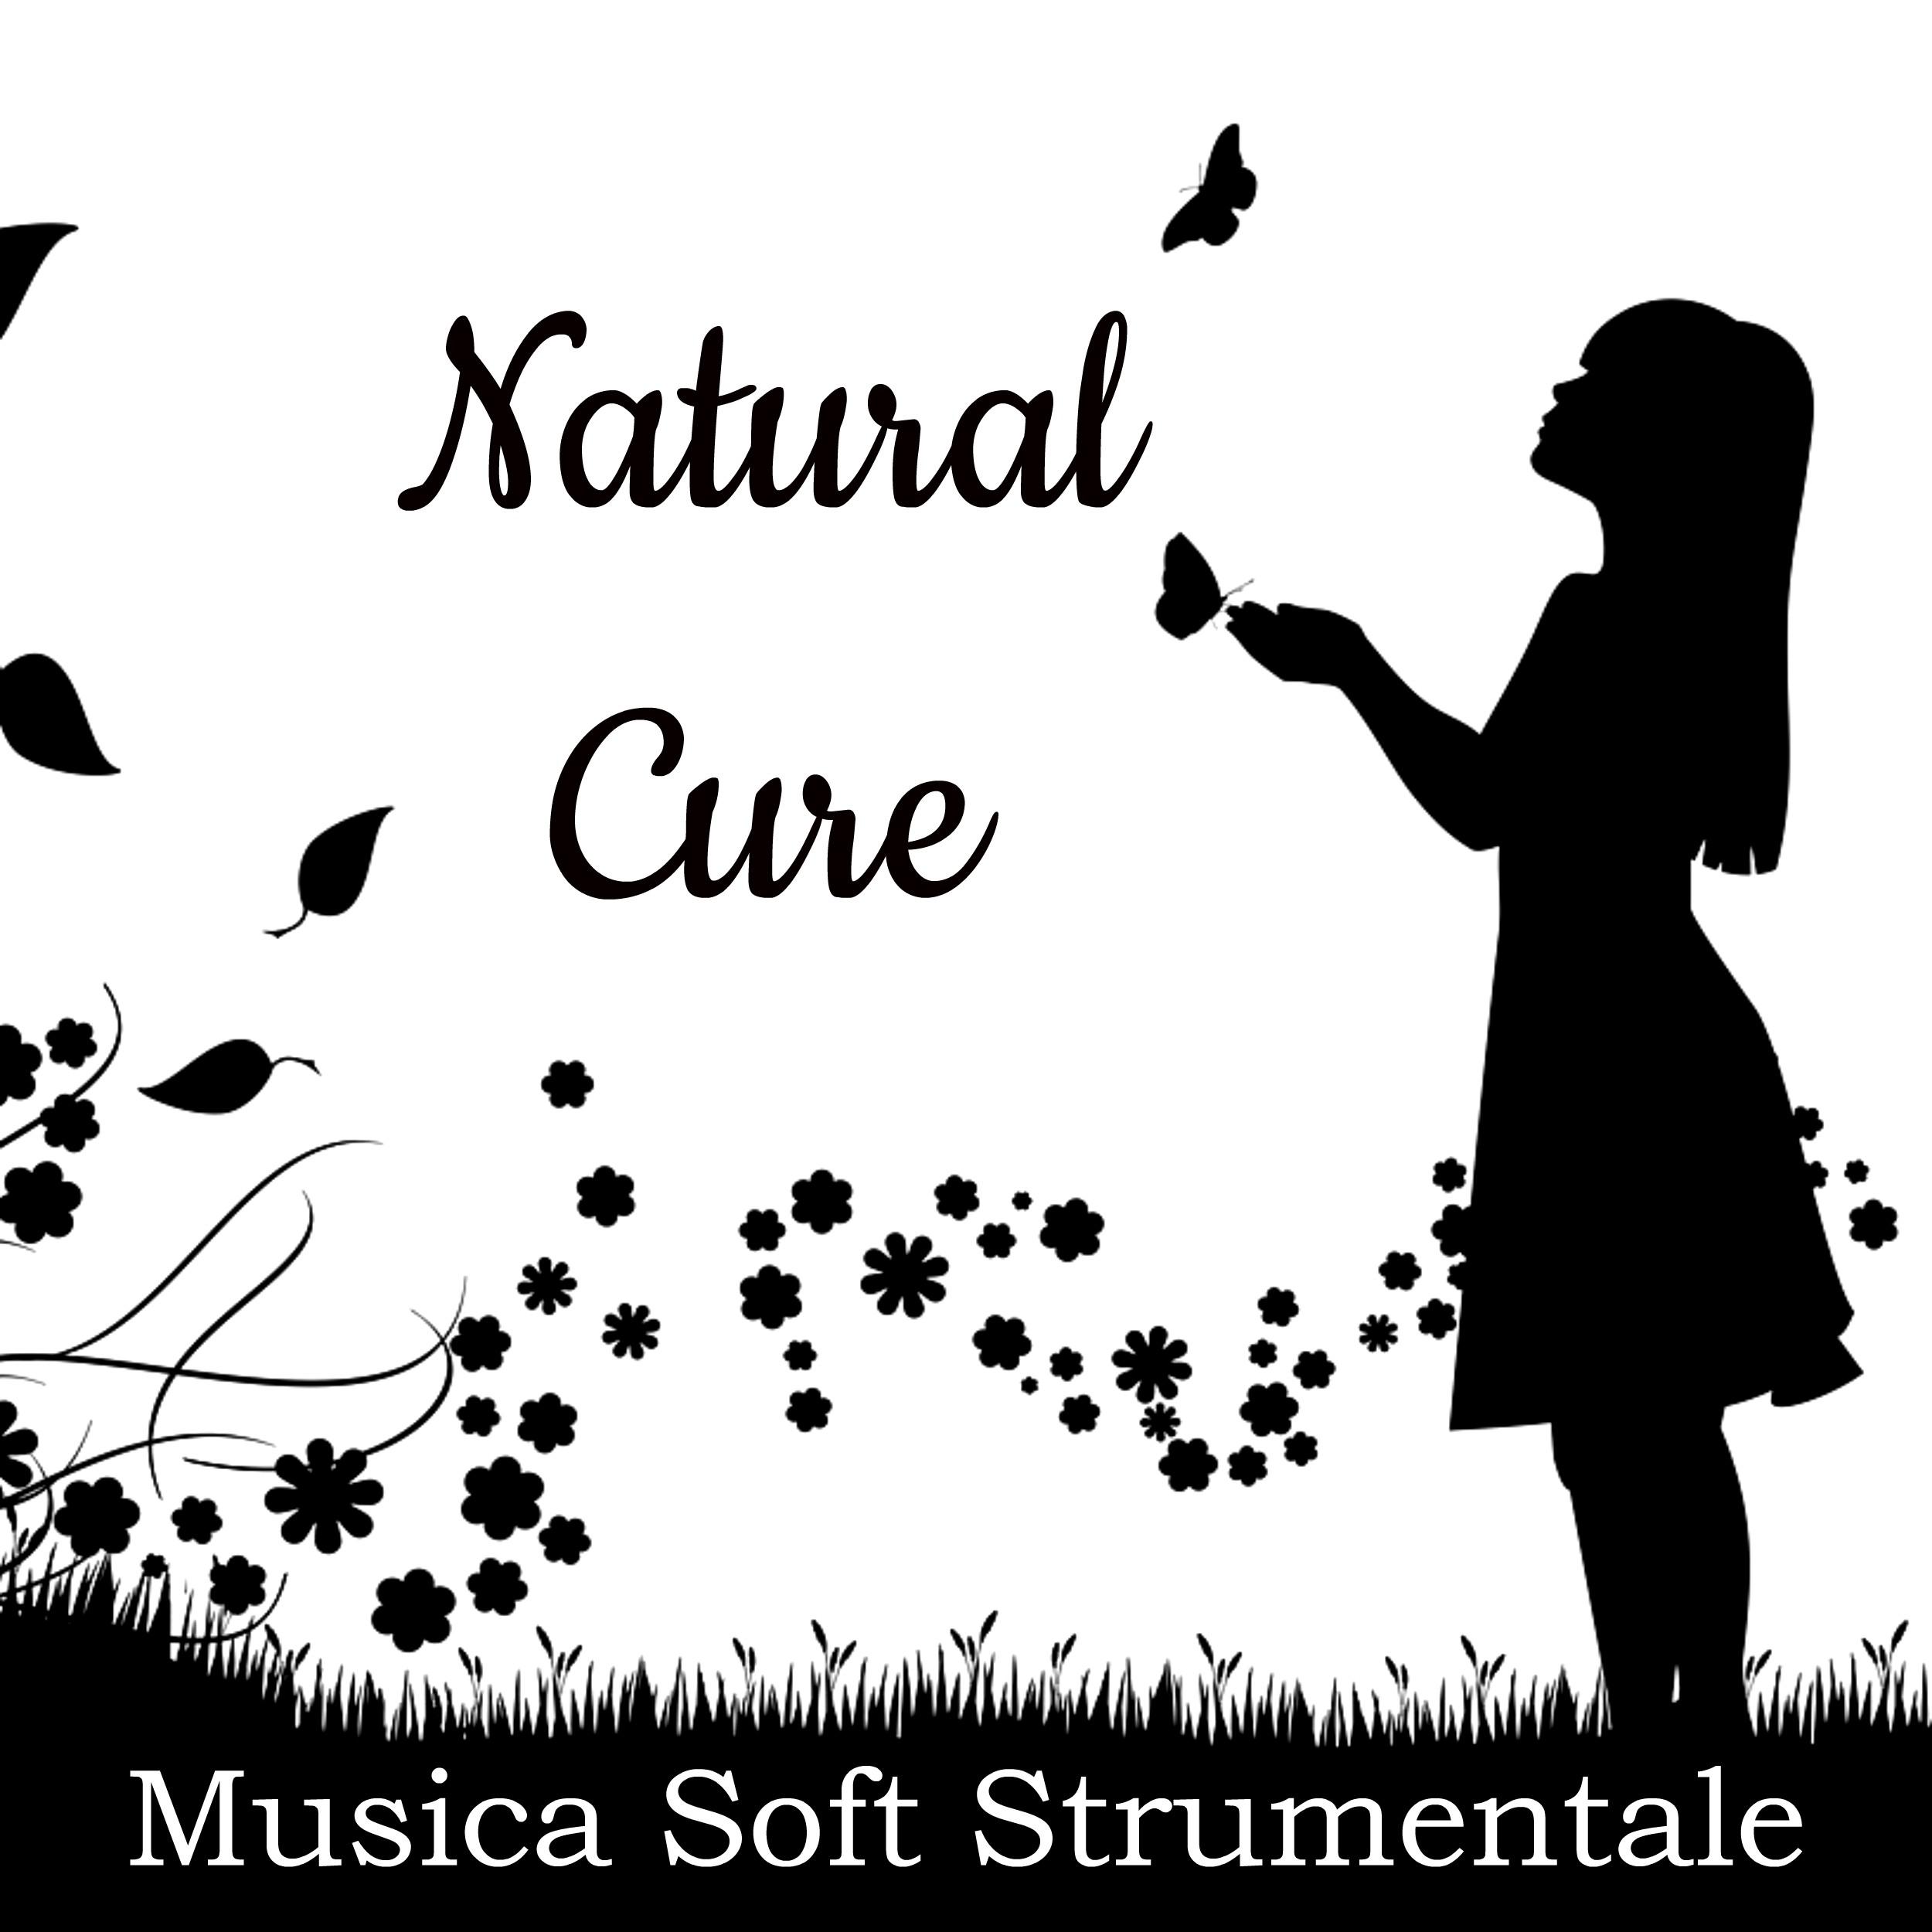 Natural Cure - Musica Soft Strumentale per Esercizi Meditazione Terapia Chakra Pensiero Positivo con Suoni New Age della Natura